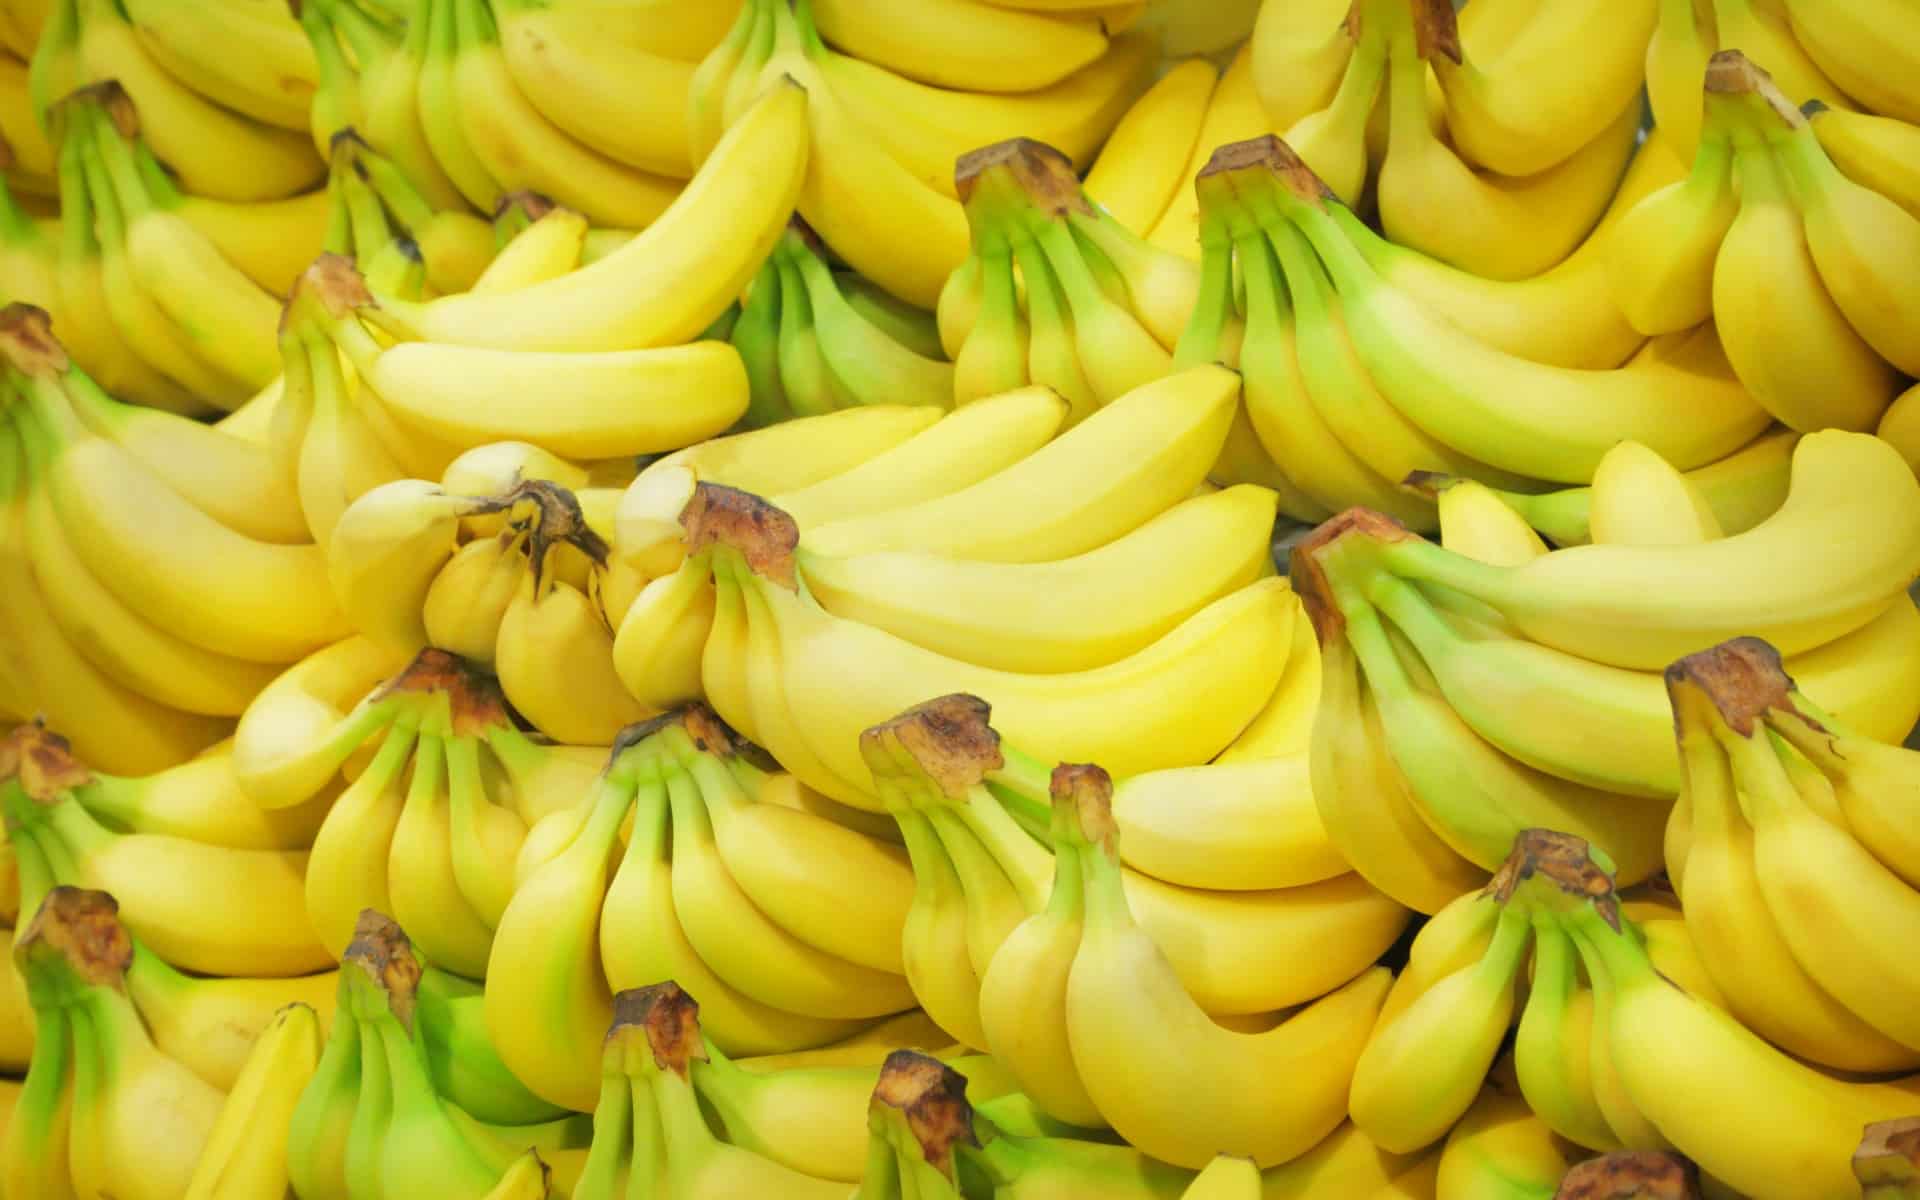 Нехай в меншій кількості, але в бананах також містяться залізо, кальцій, натрій, цинк, мідь і селен - важливі мікроелементи для організму